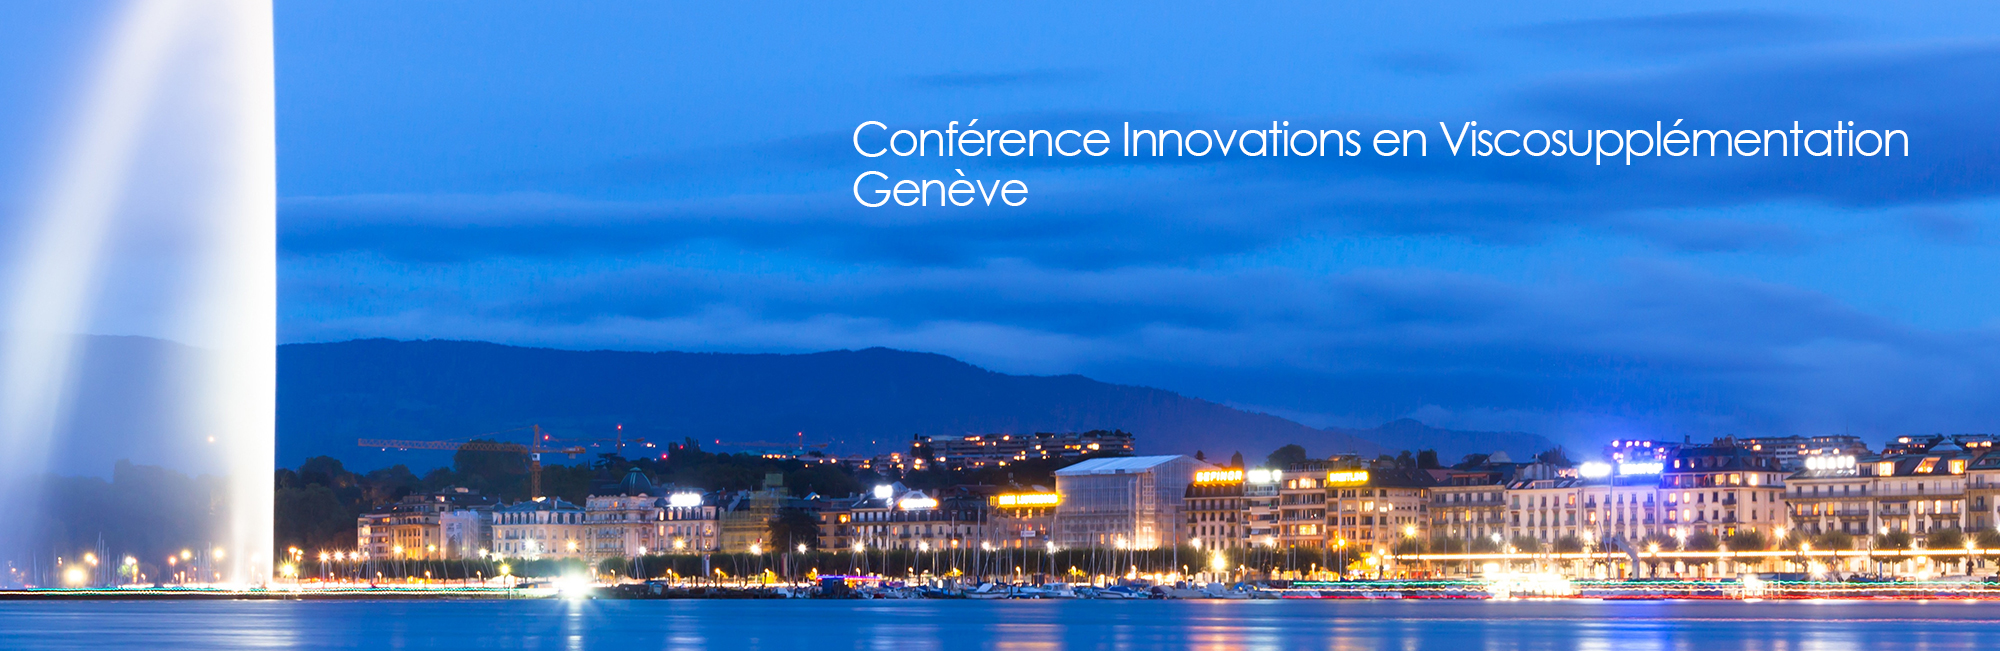 conference innovations en viscosupplémentation à Genève